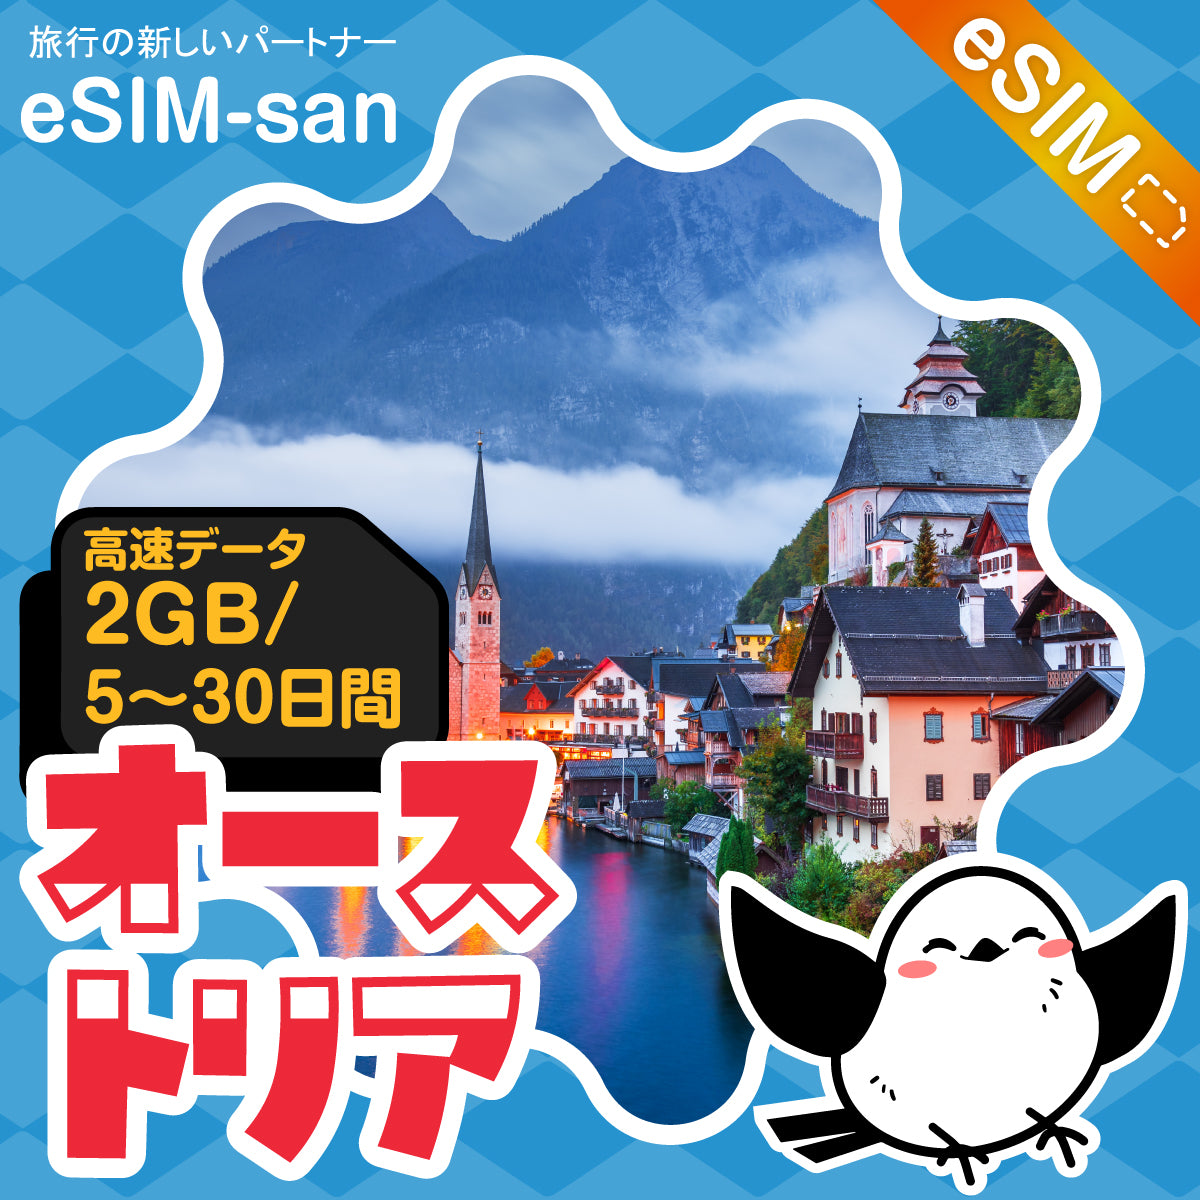 オーストリアeSIMの2GB/dayプラン画像_eSIM-san